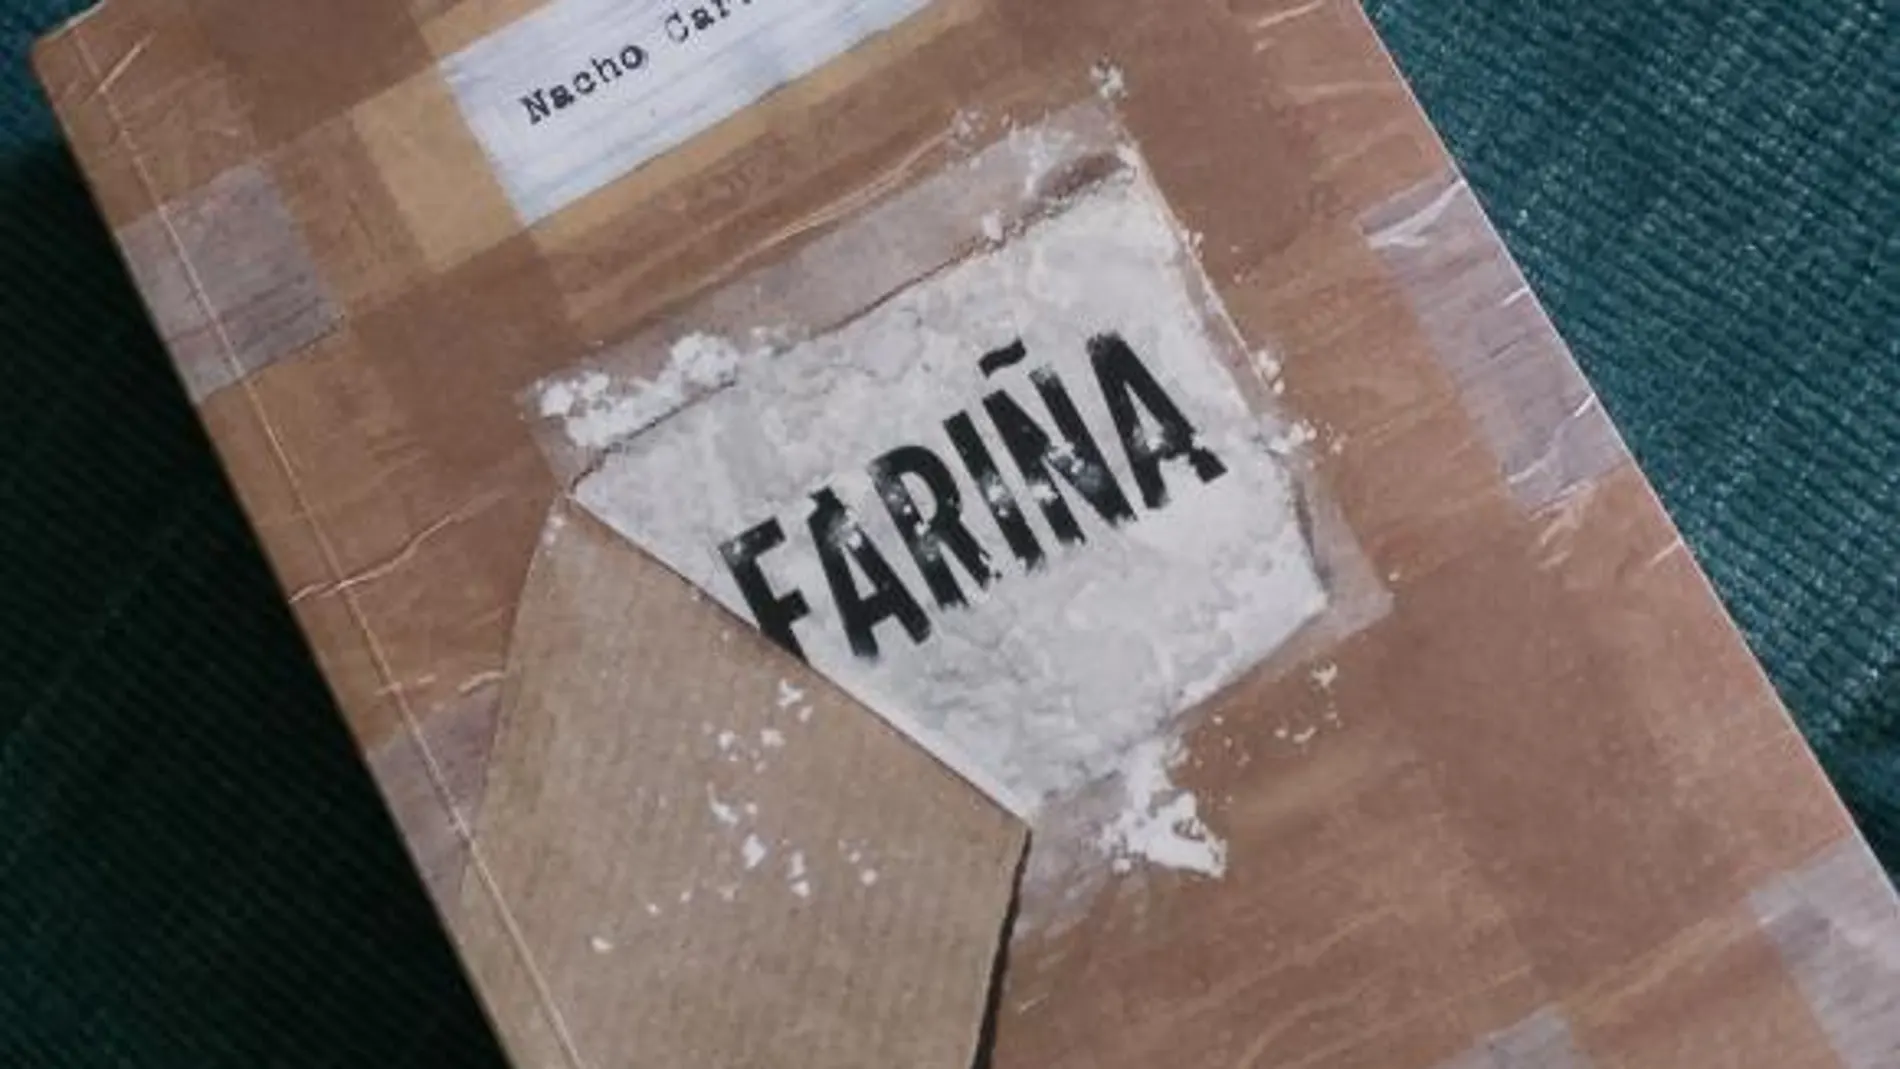 Portada del libro "Fariña", en el que el periodista Nacho Carretero profundiza en la historia del narcotráfico gallego